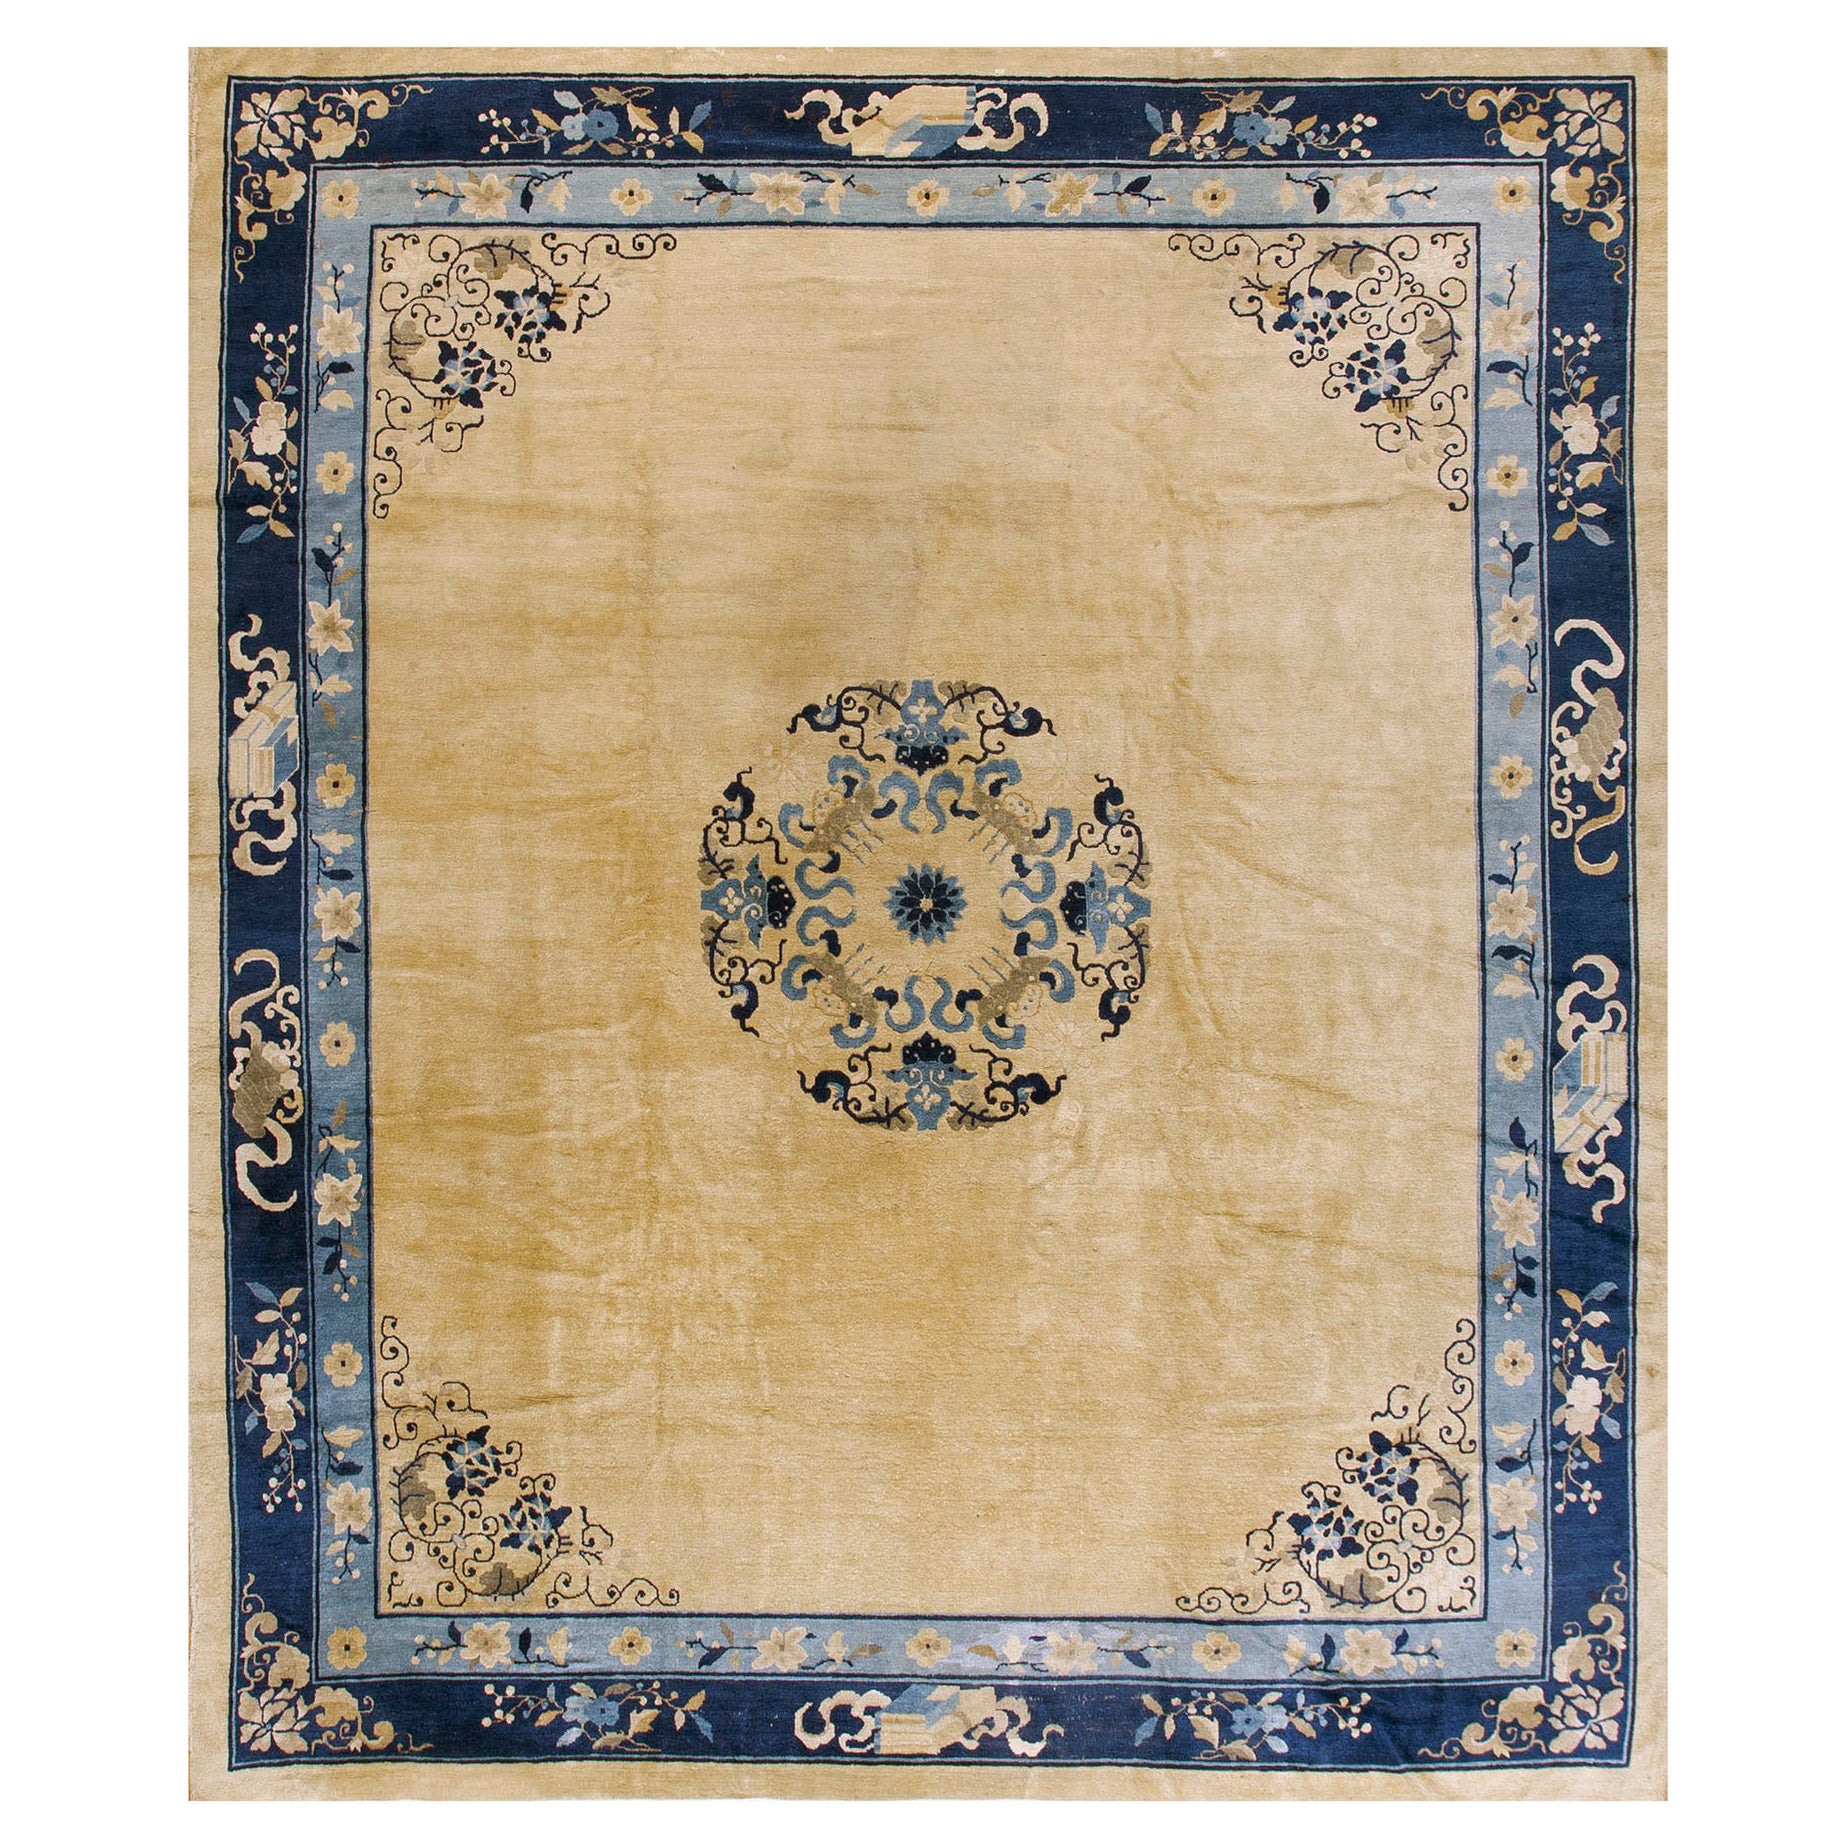 Chinesischer Pekinger Teppich des frühen 20. Jahrhunderts ( 10' x 11'6'' - 305 x 350)